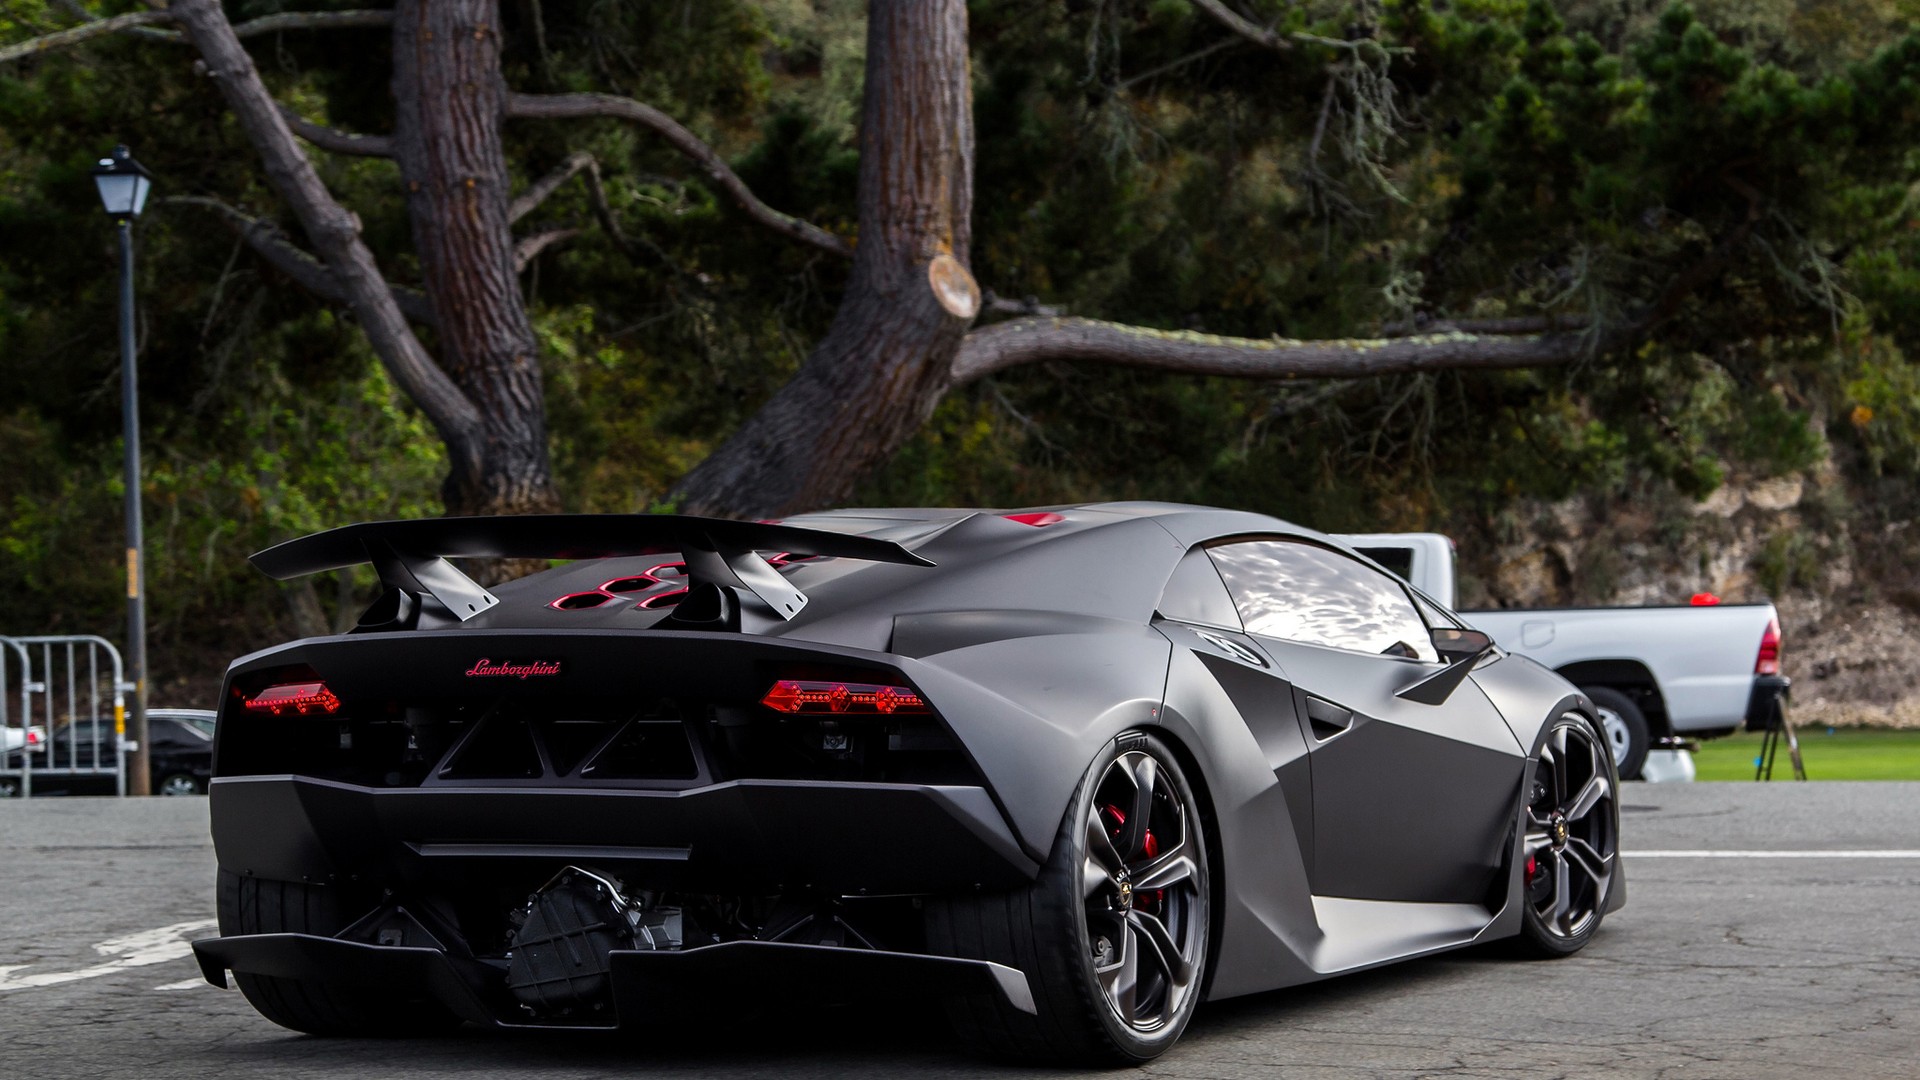 Lamborghini Sesto Elemento HD Wallpaper | Background Image ...